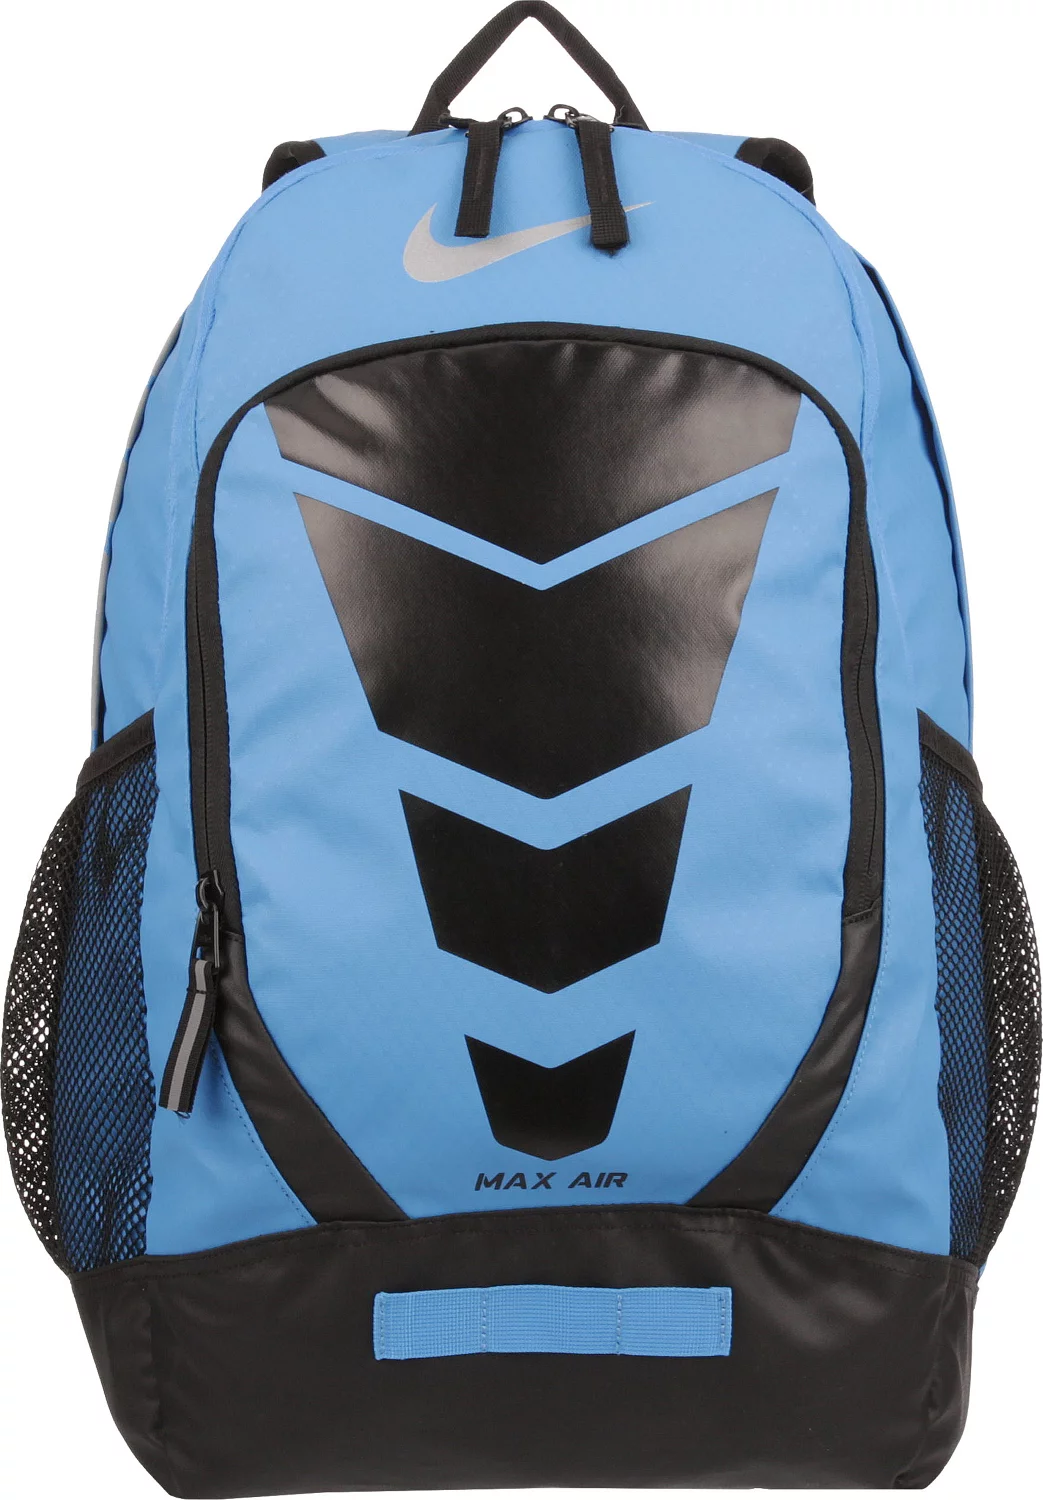 nike max air backpack sale